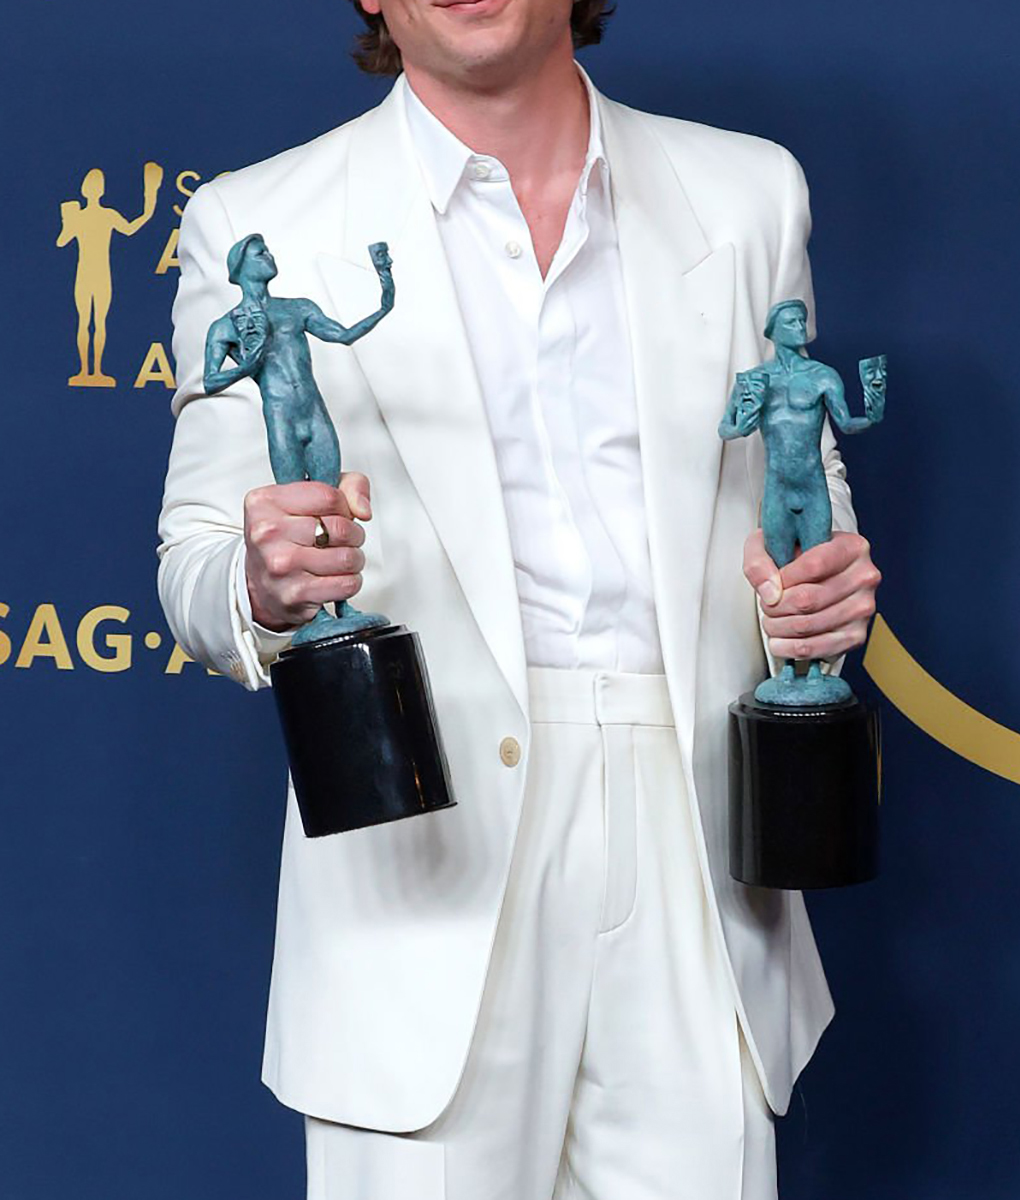 Jeremy Allen White 30 SAG Awards Suit (5)